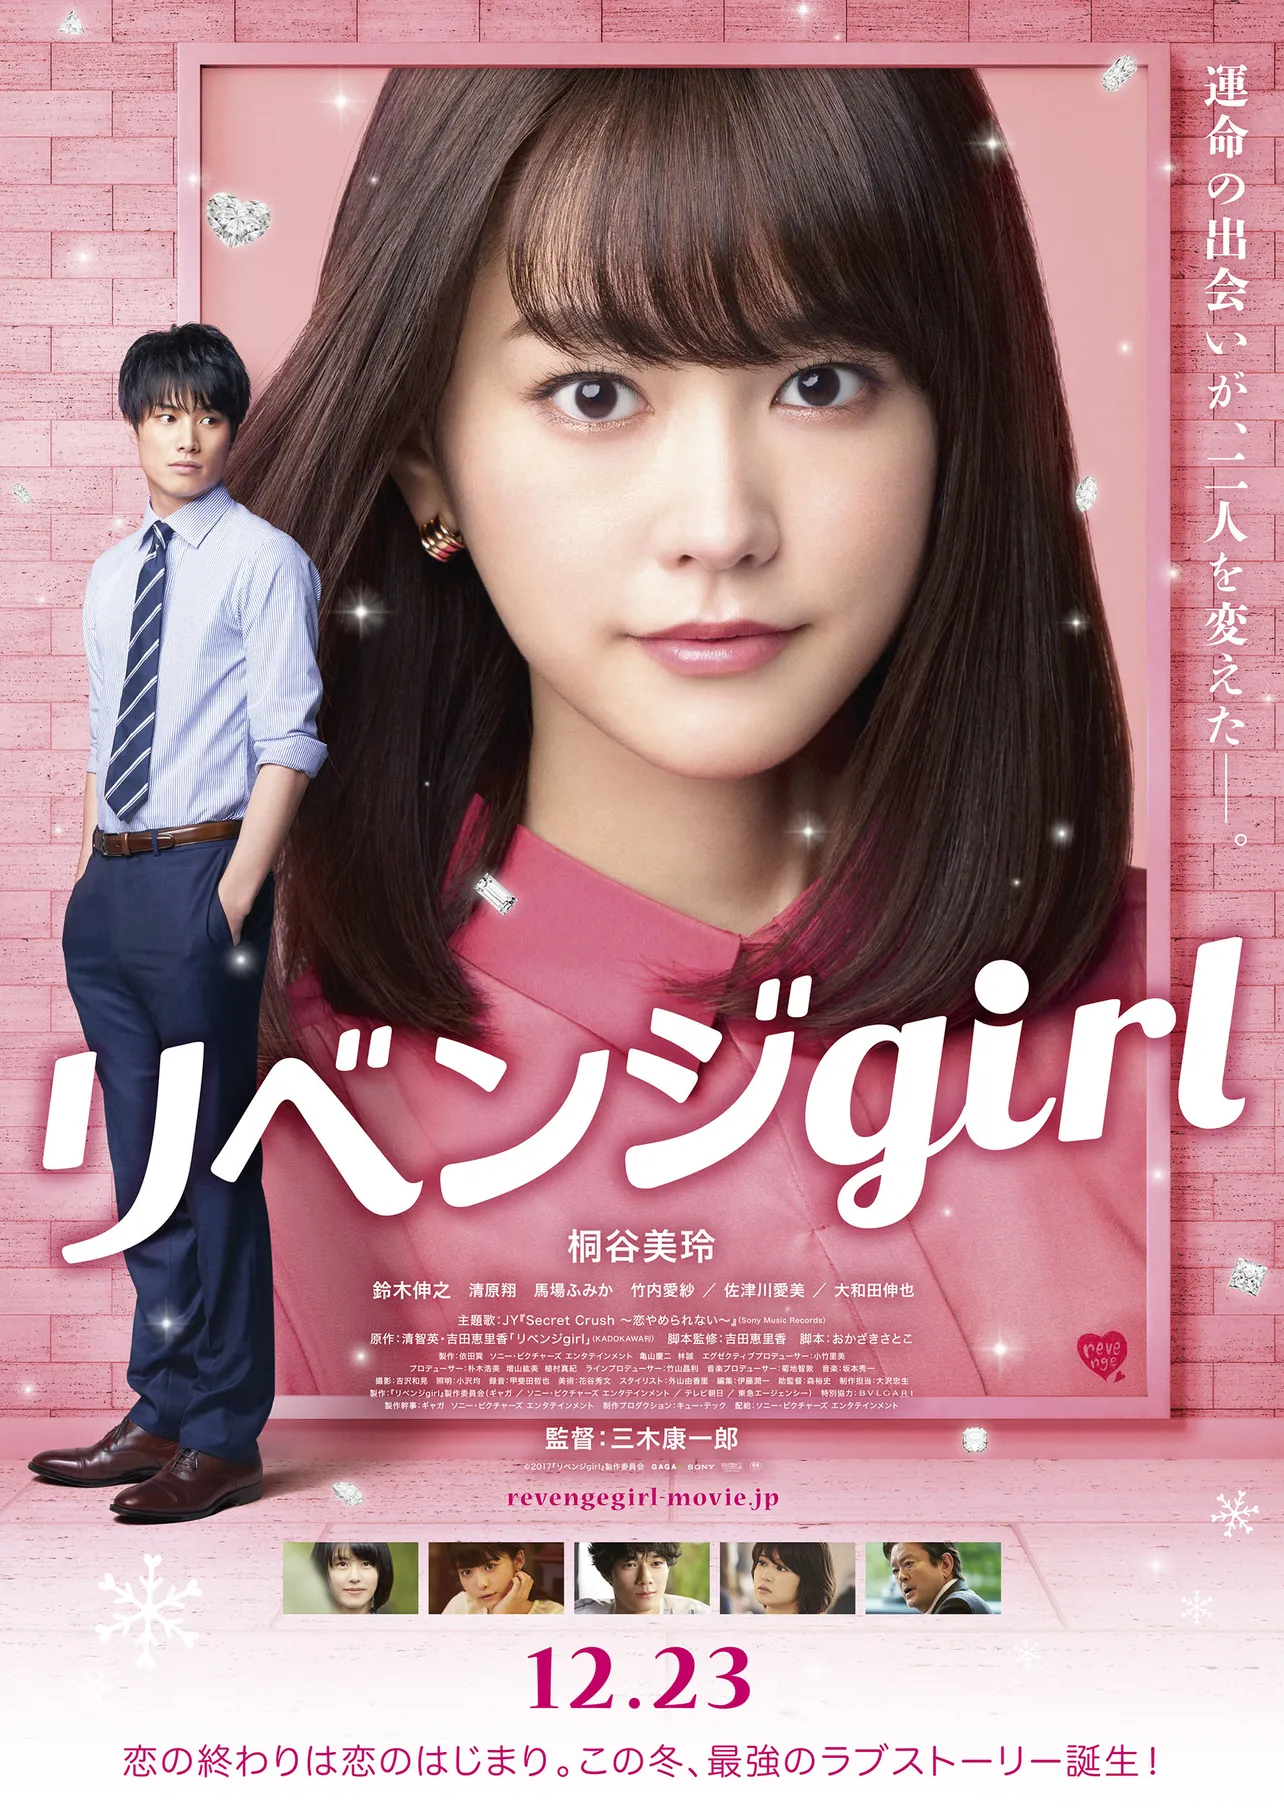 桐谷美玲主演映画「リベンジgirl」は12月23日(祝・土)に全国ロードショー